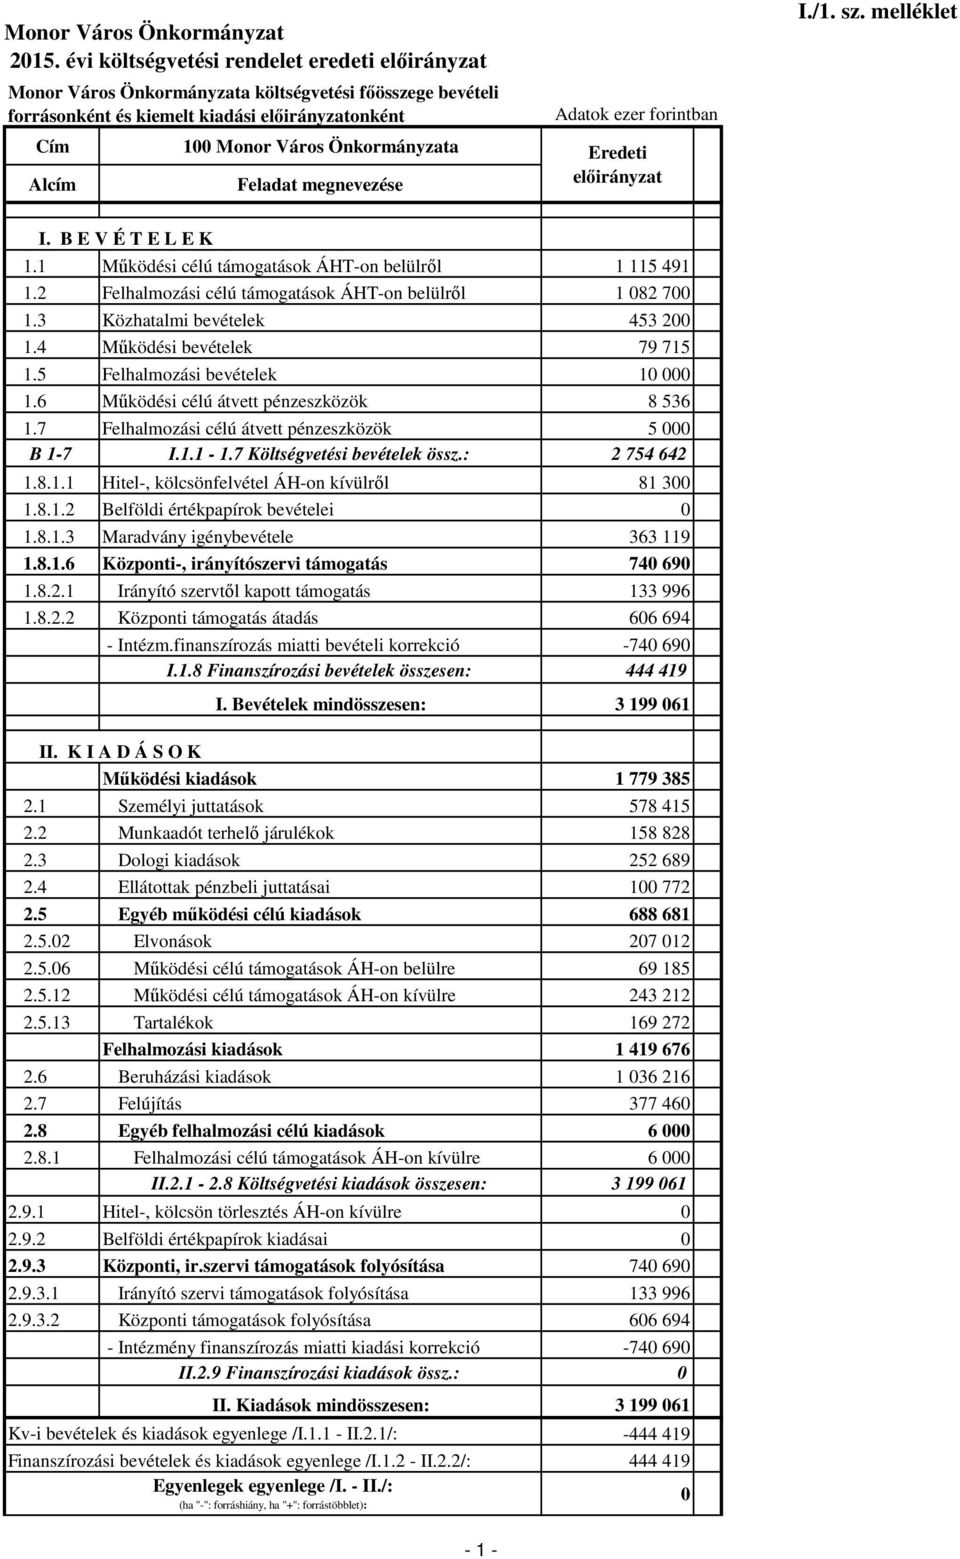 5 Felhalmozási bevételek 10 000 1.6 Működési célú átvett pénzeszközök 8 536 1.7 Felhalmozási célú átvett pénzeszközök 5 000 B 1-7 I.1.1-1.7 Költségvetési bevételek össz.: 2 754 642 1.8.1.1 Hitel-, kölcsönfelvétel ÁH-on kívülről 81 300 1.